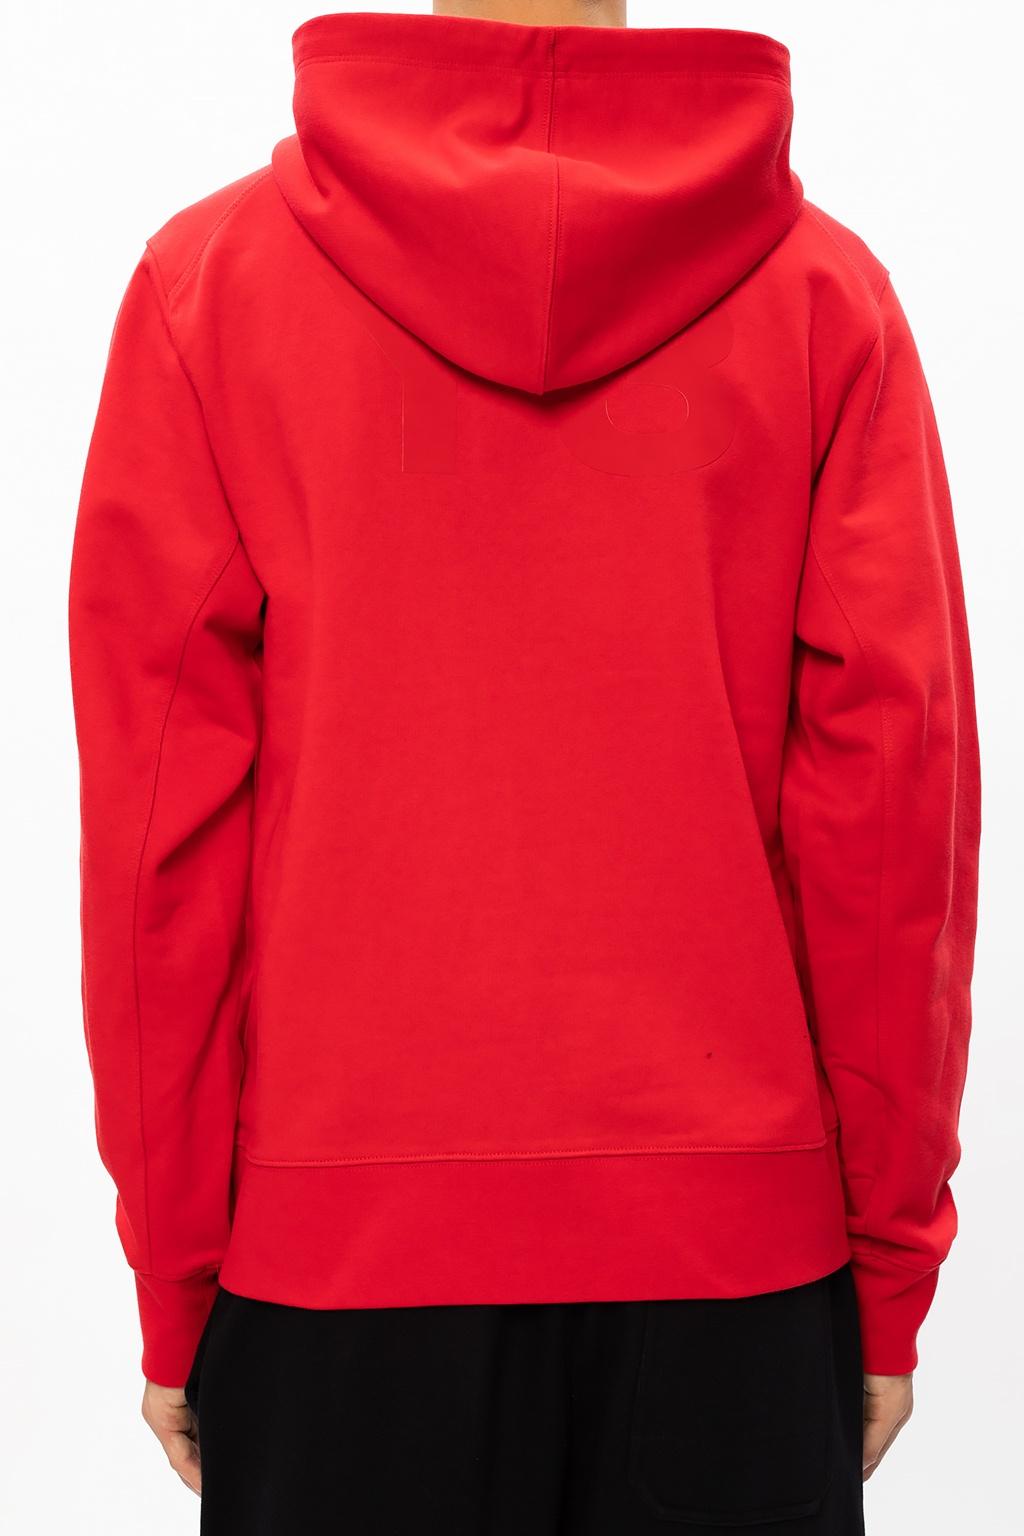 y3 red hoodie